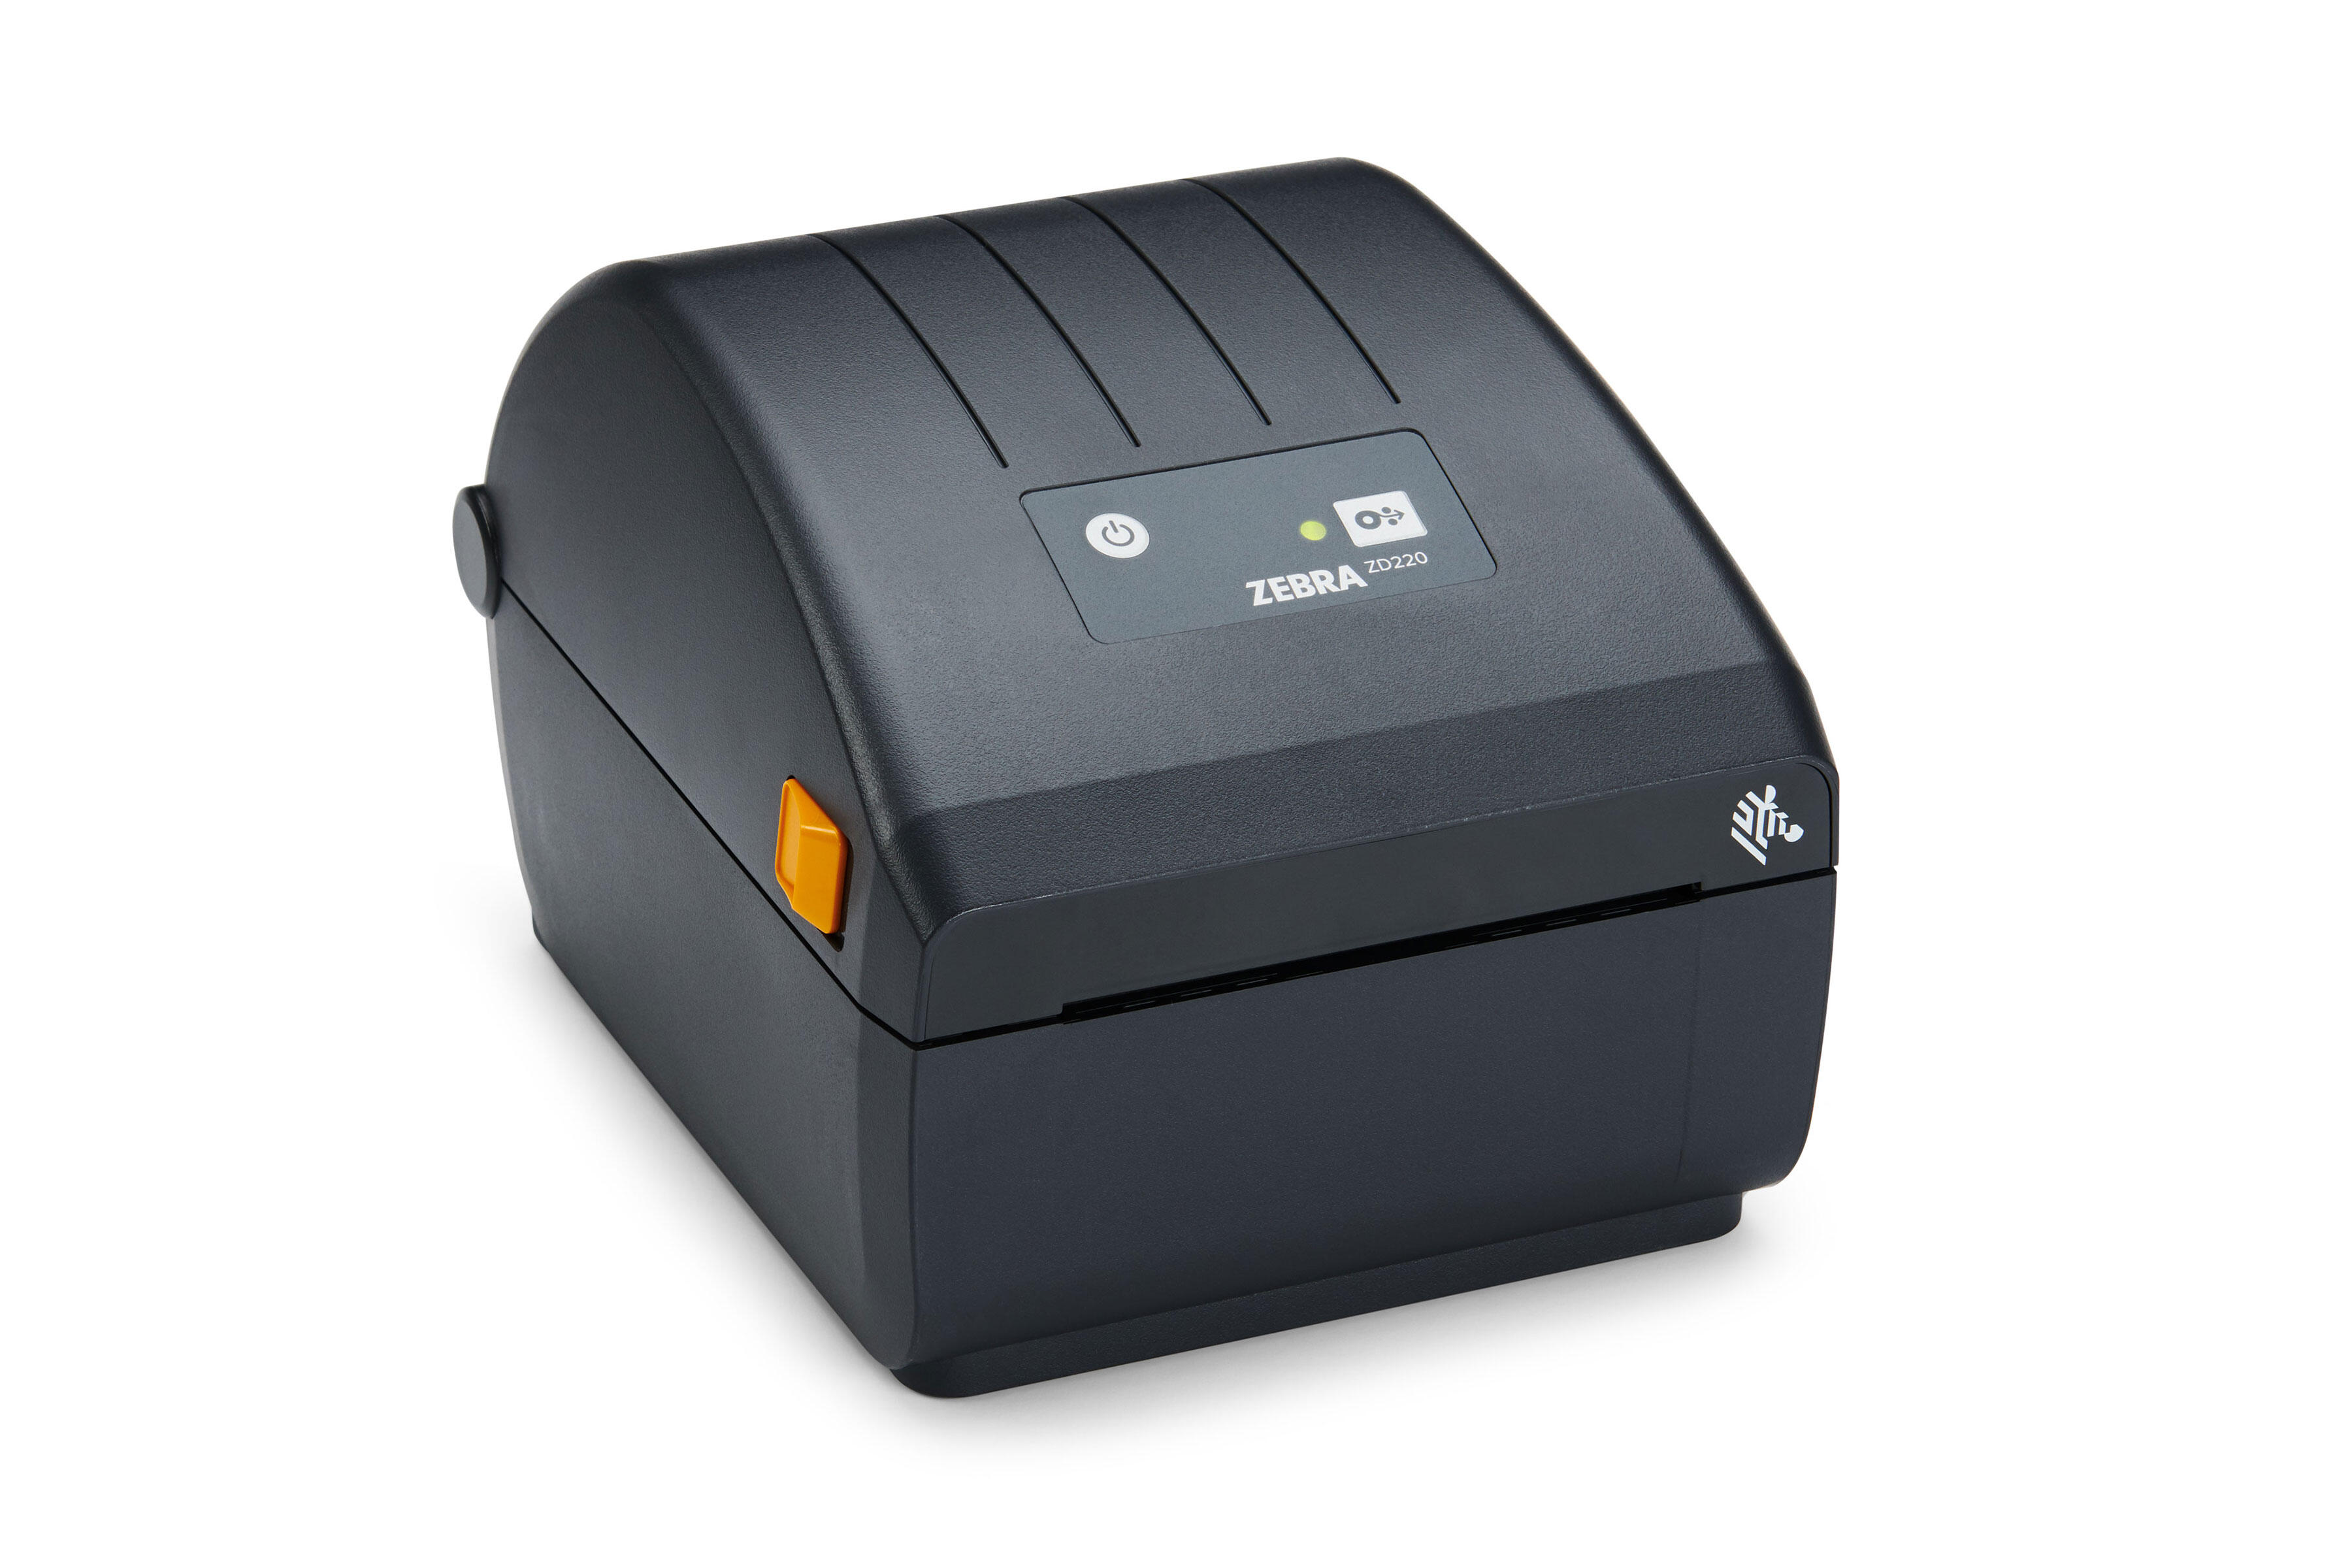 Zd200 series desktop printer